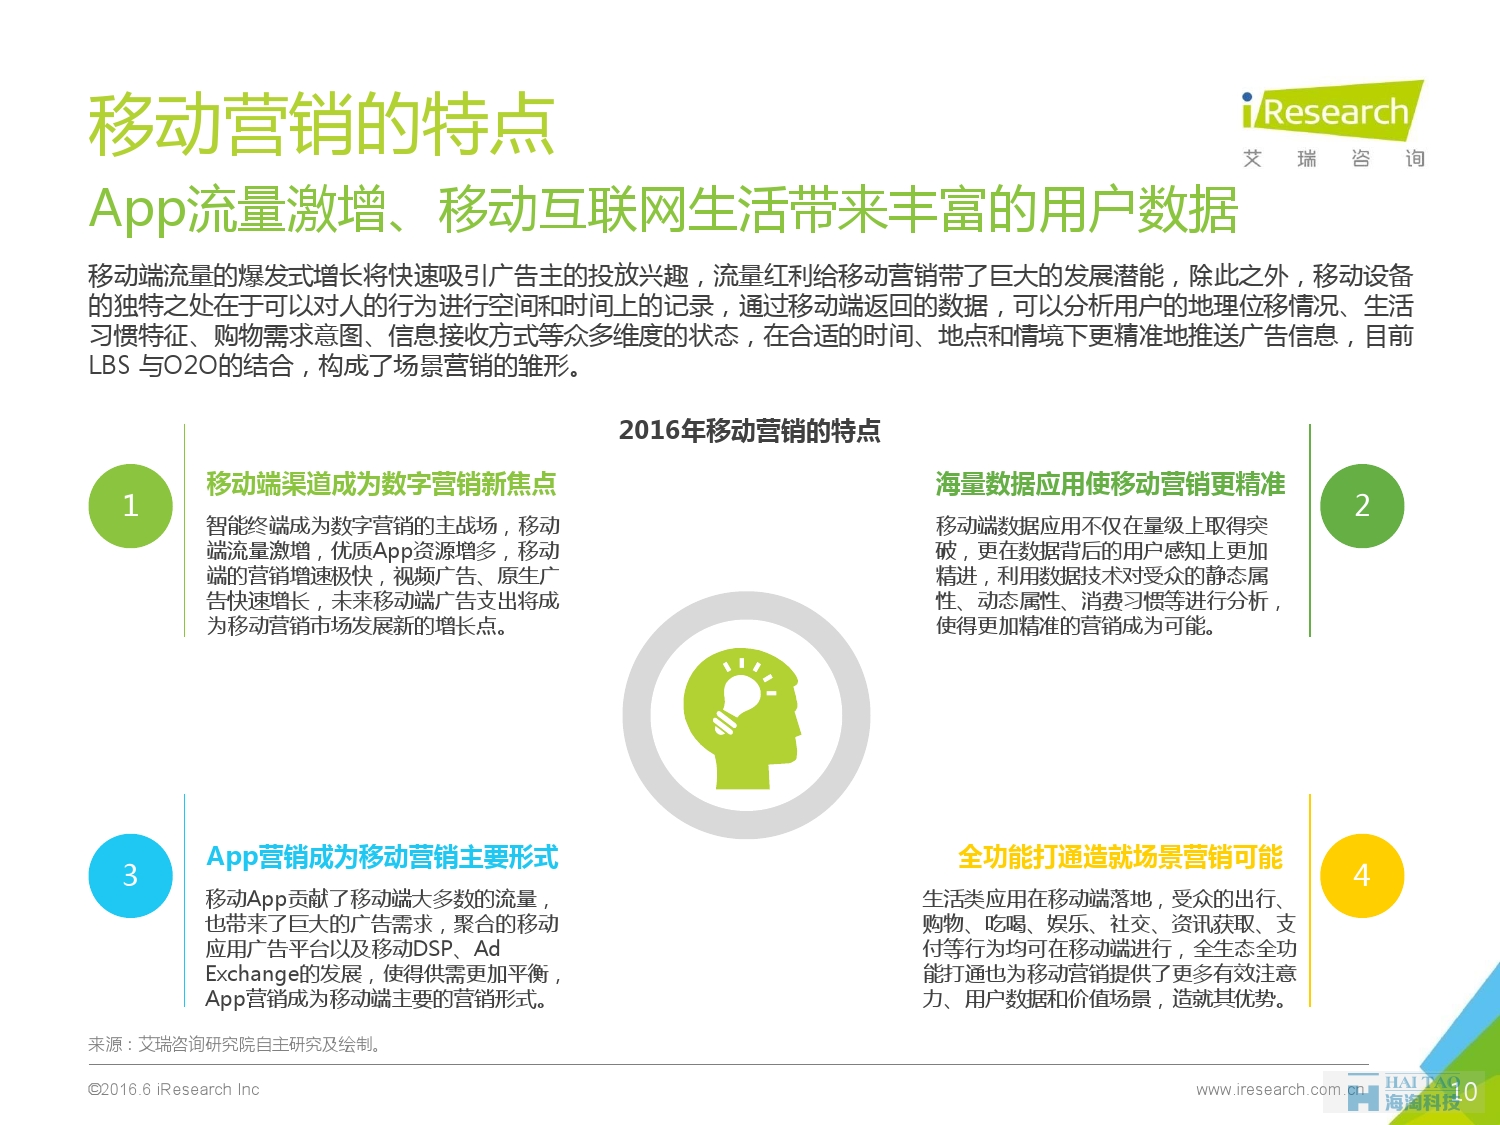 2016年中国移动营销行业研究报告——程序化时代篇_000010